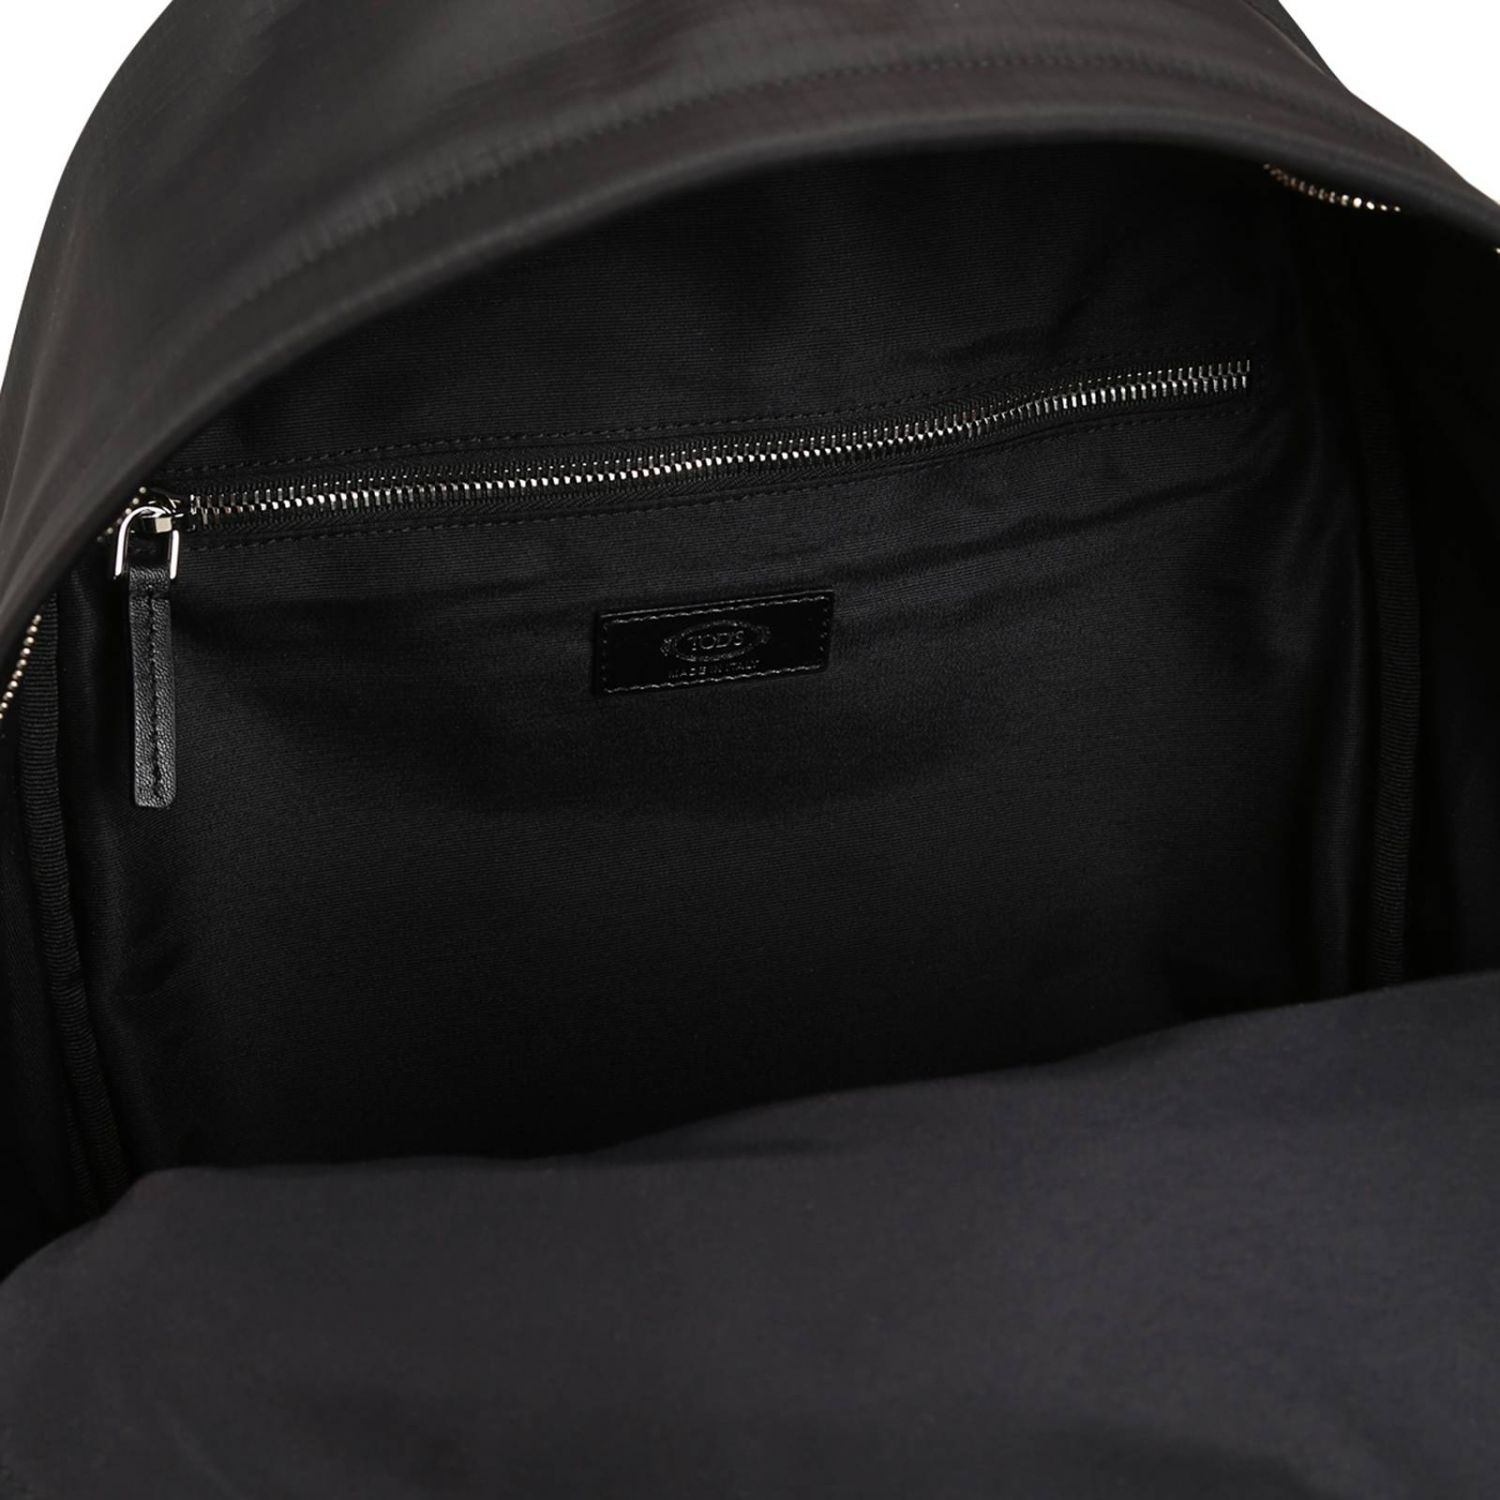 Tods Outlet: Backpack men Tod's | Backpack Tods Men Black | Backpack ...